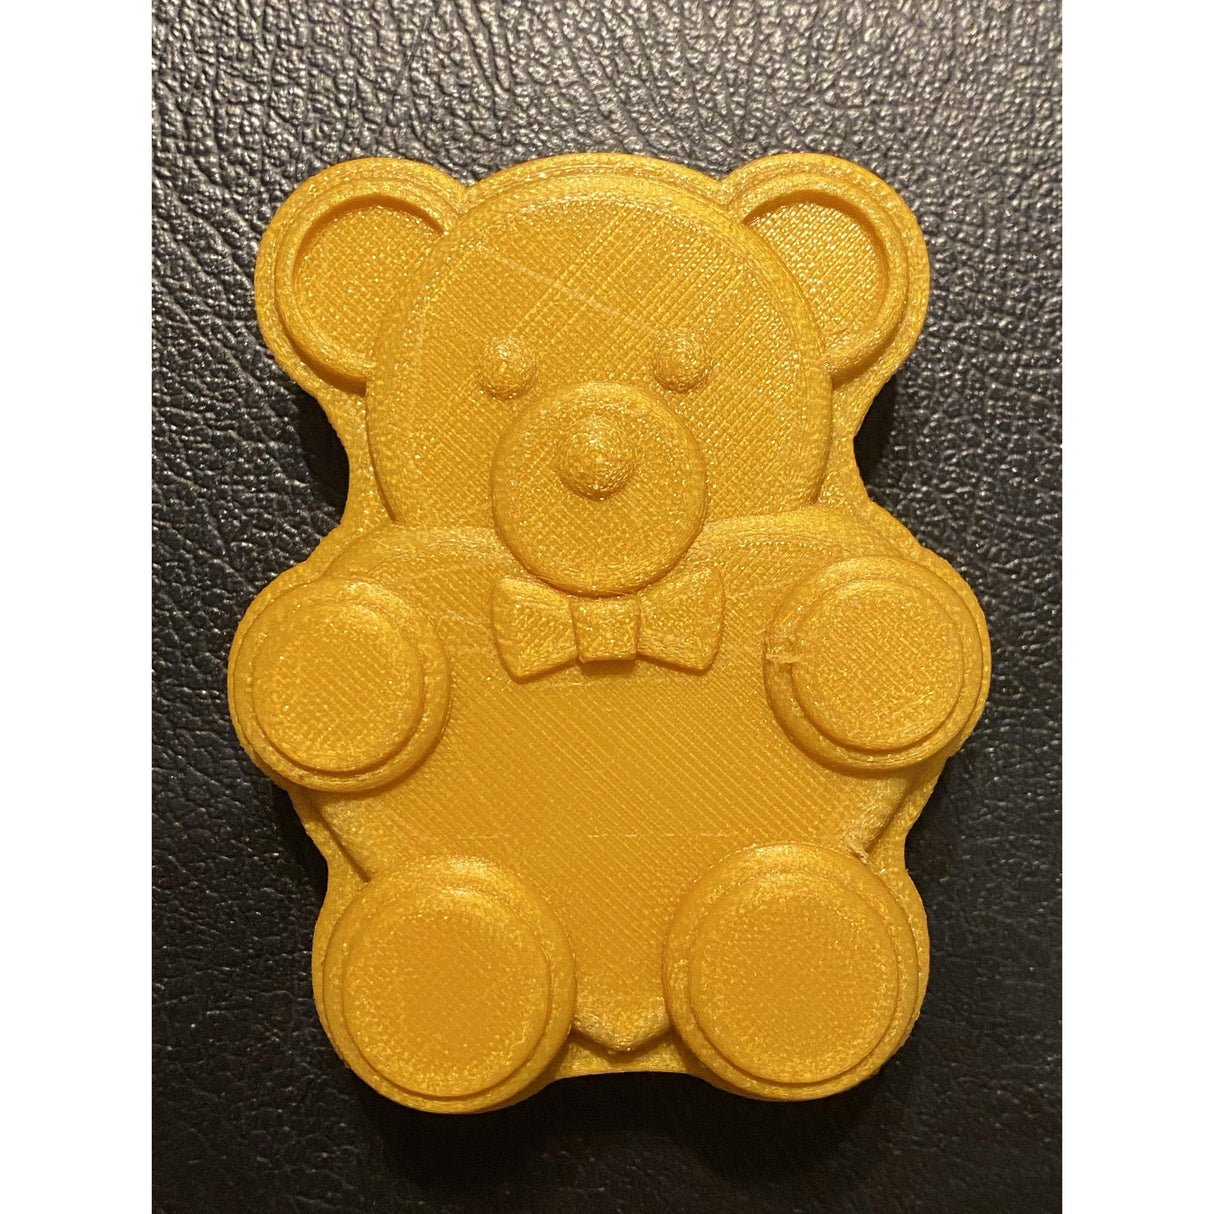 Teddy Bear with Heart Plastic Hand Mold